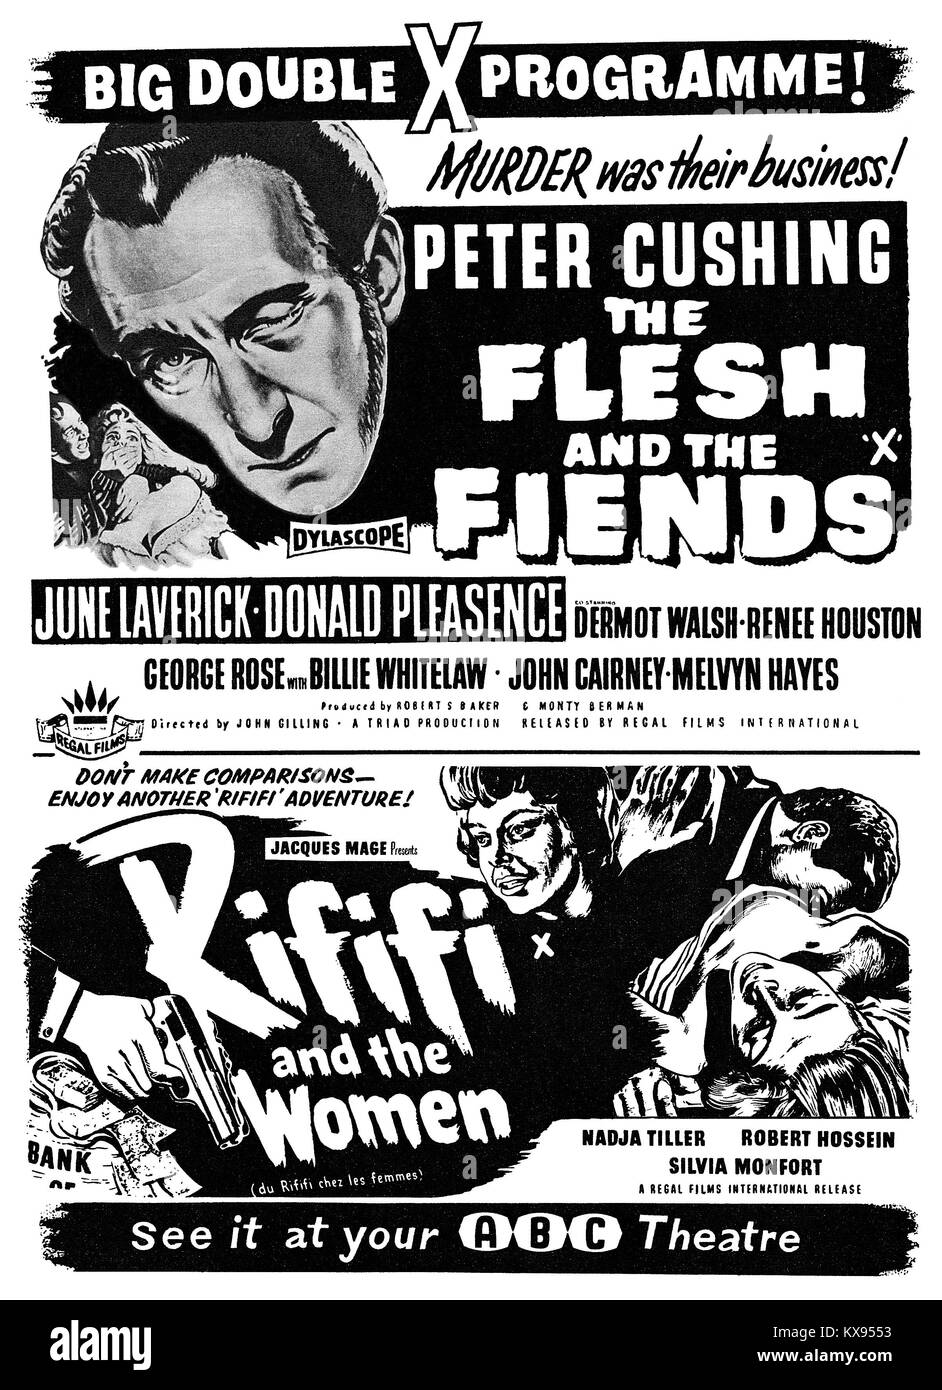 1960 britischen Werbung für eine x-rated Film double Bill, mit Peter Cushing in dem Fleisch und dem Teufel und dem französischen Film Rififi und die Frauen (auch als Riff Raff Mädchen und Du Rififi Chez Les femmes). Stockfoto